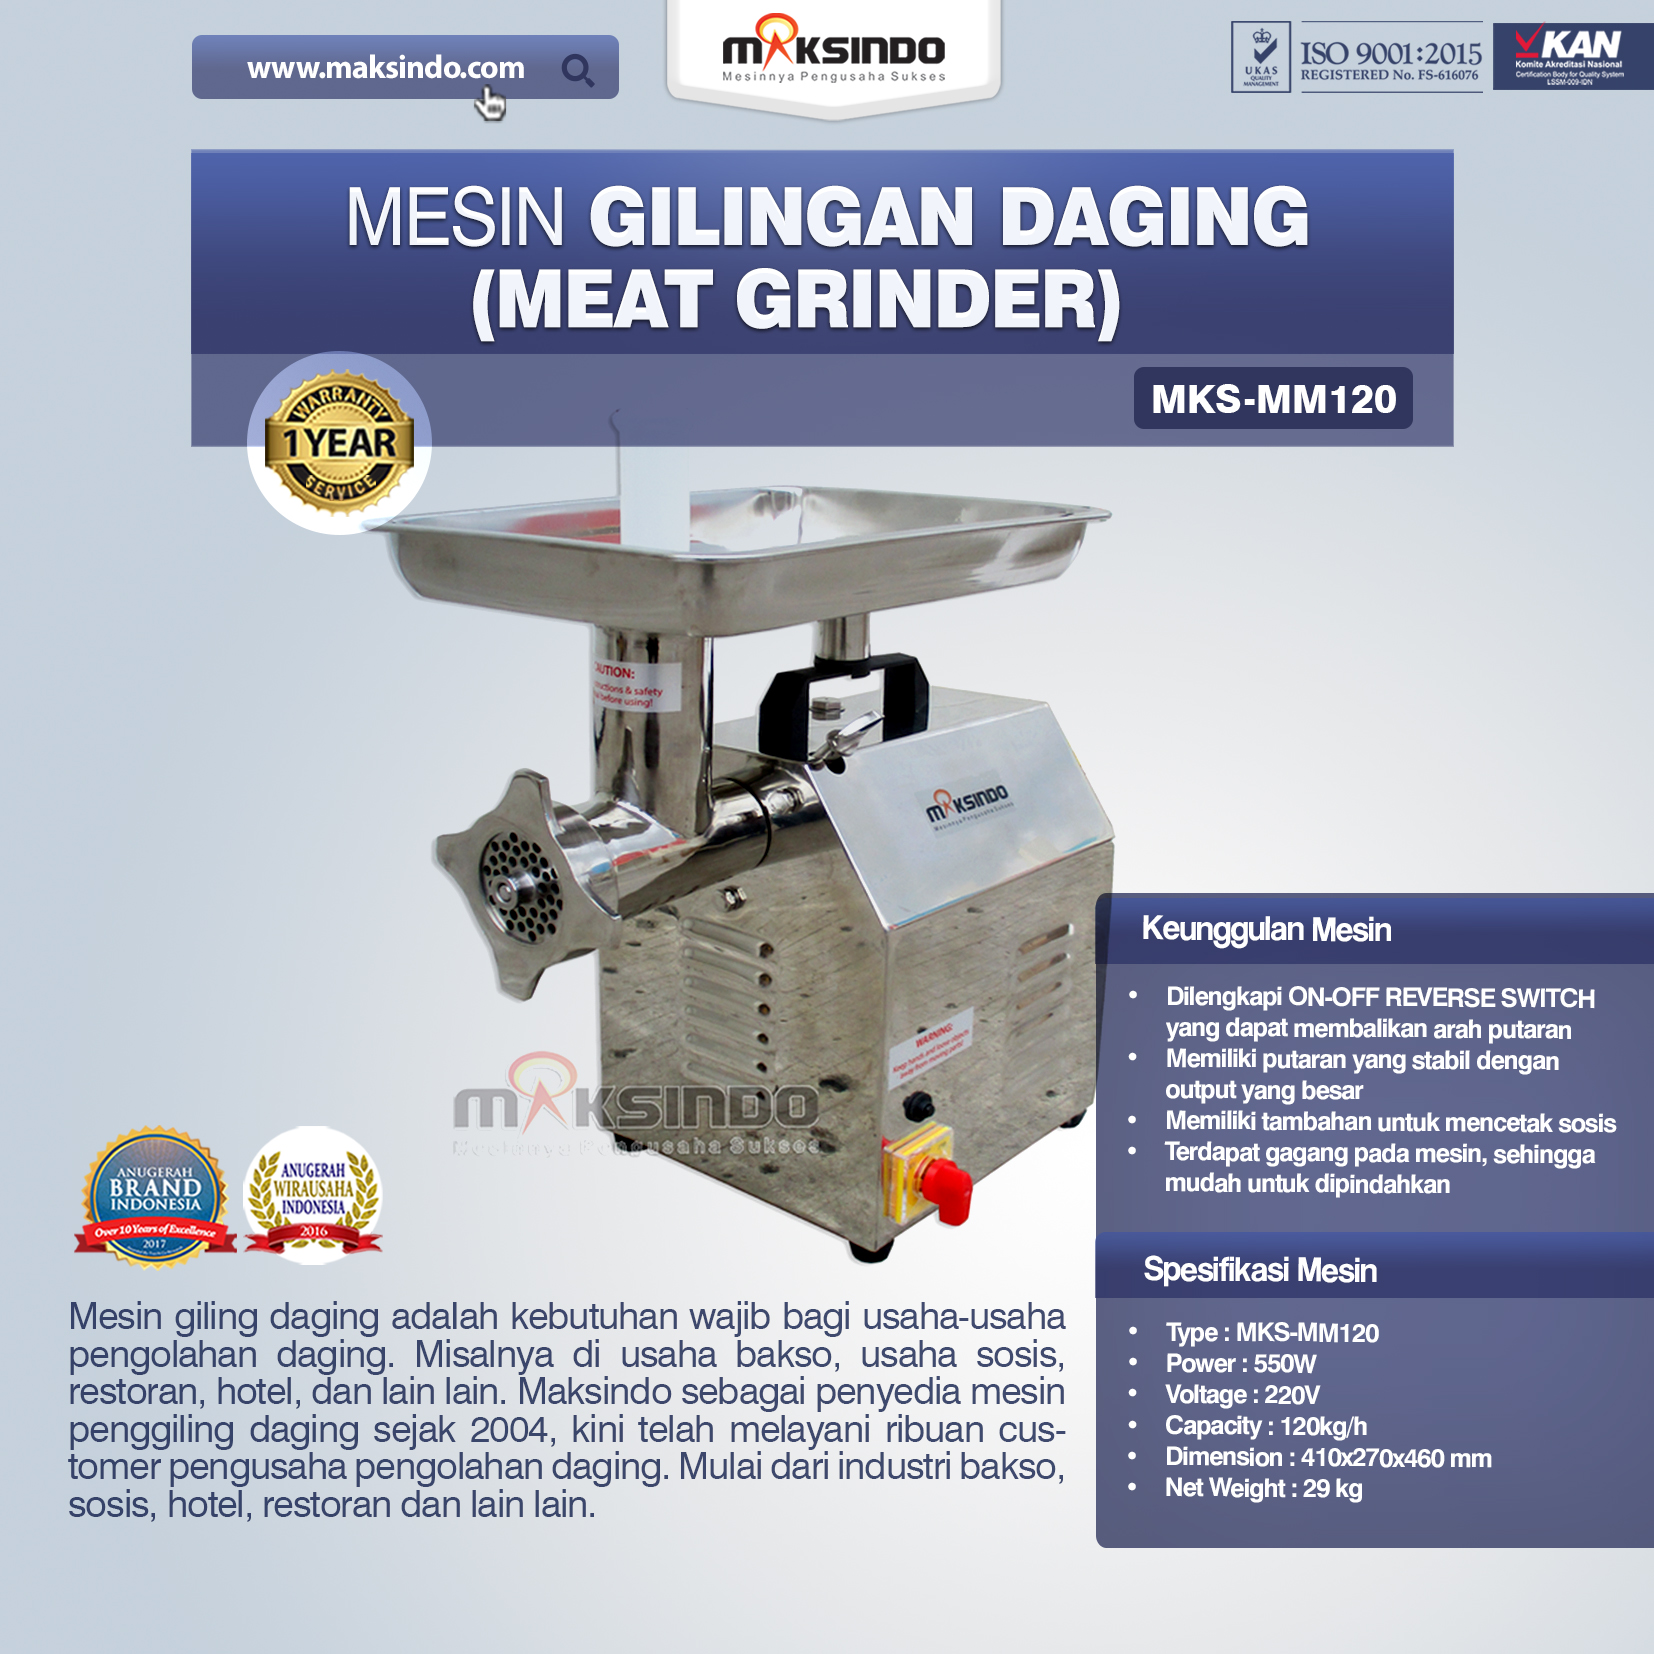 Mesin Giling Daging (Meat Grinder) MKS-MM120